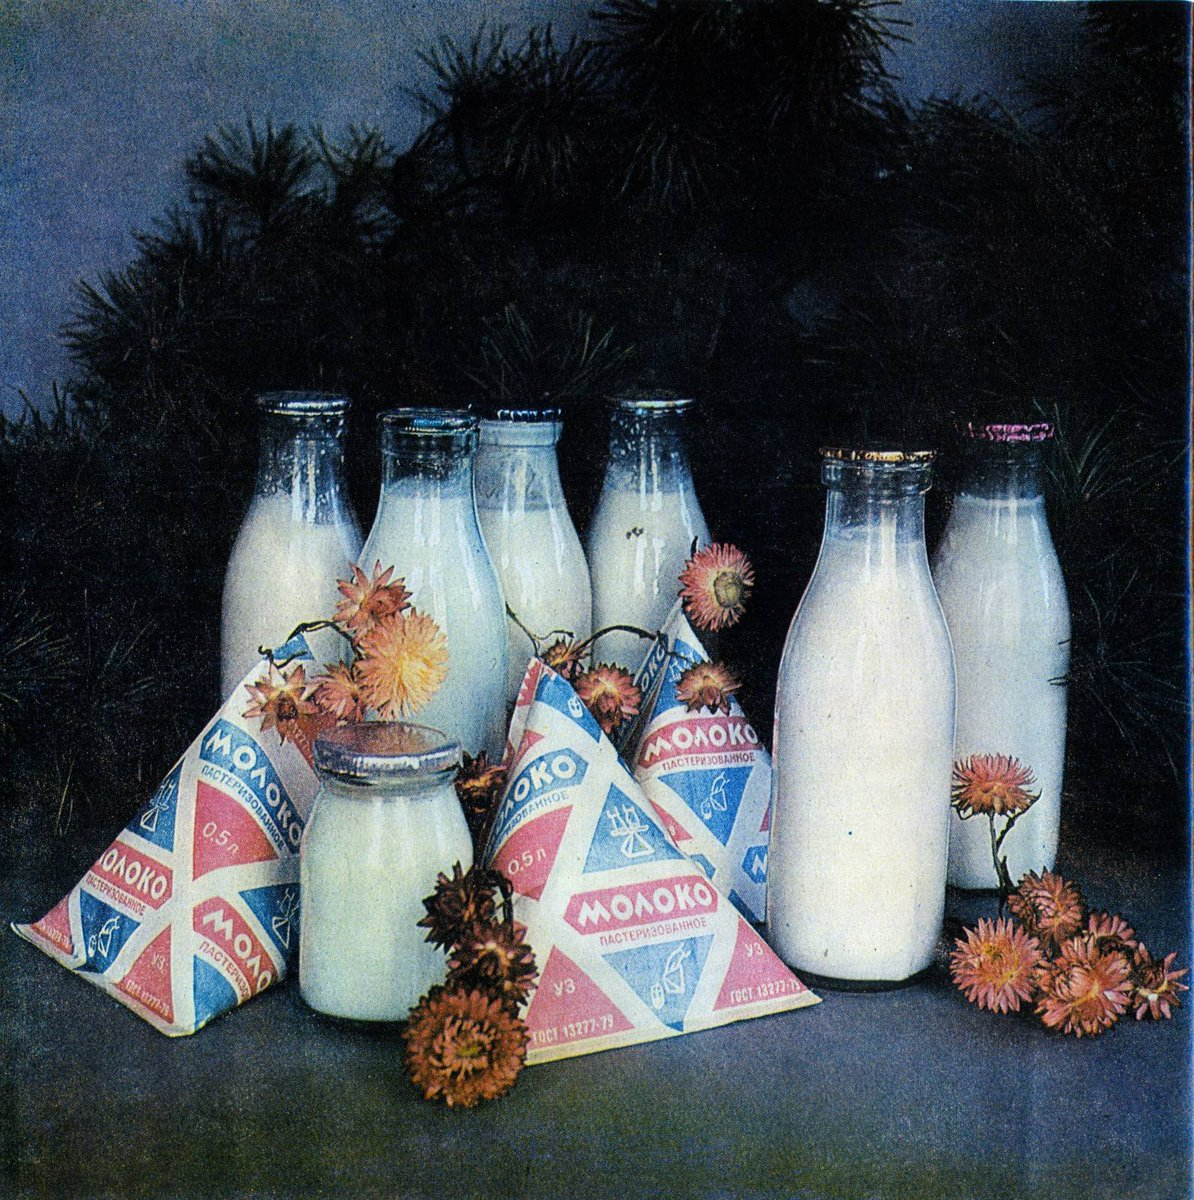 Идут времена, меняются продукты. упаковки, качество, состав. А ведь некоторые из них были символами целой эпохи, вспомните авоську со стеклянными бутылками с молоком, например.